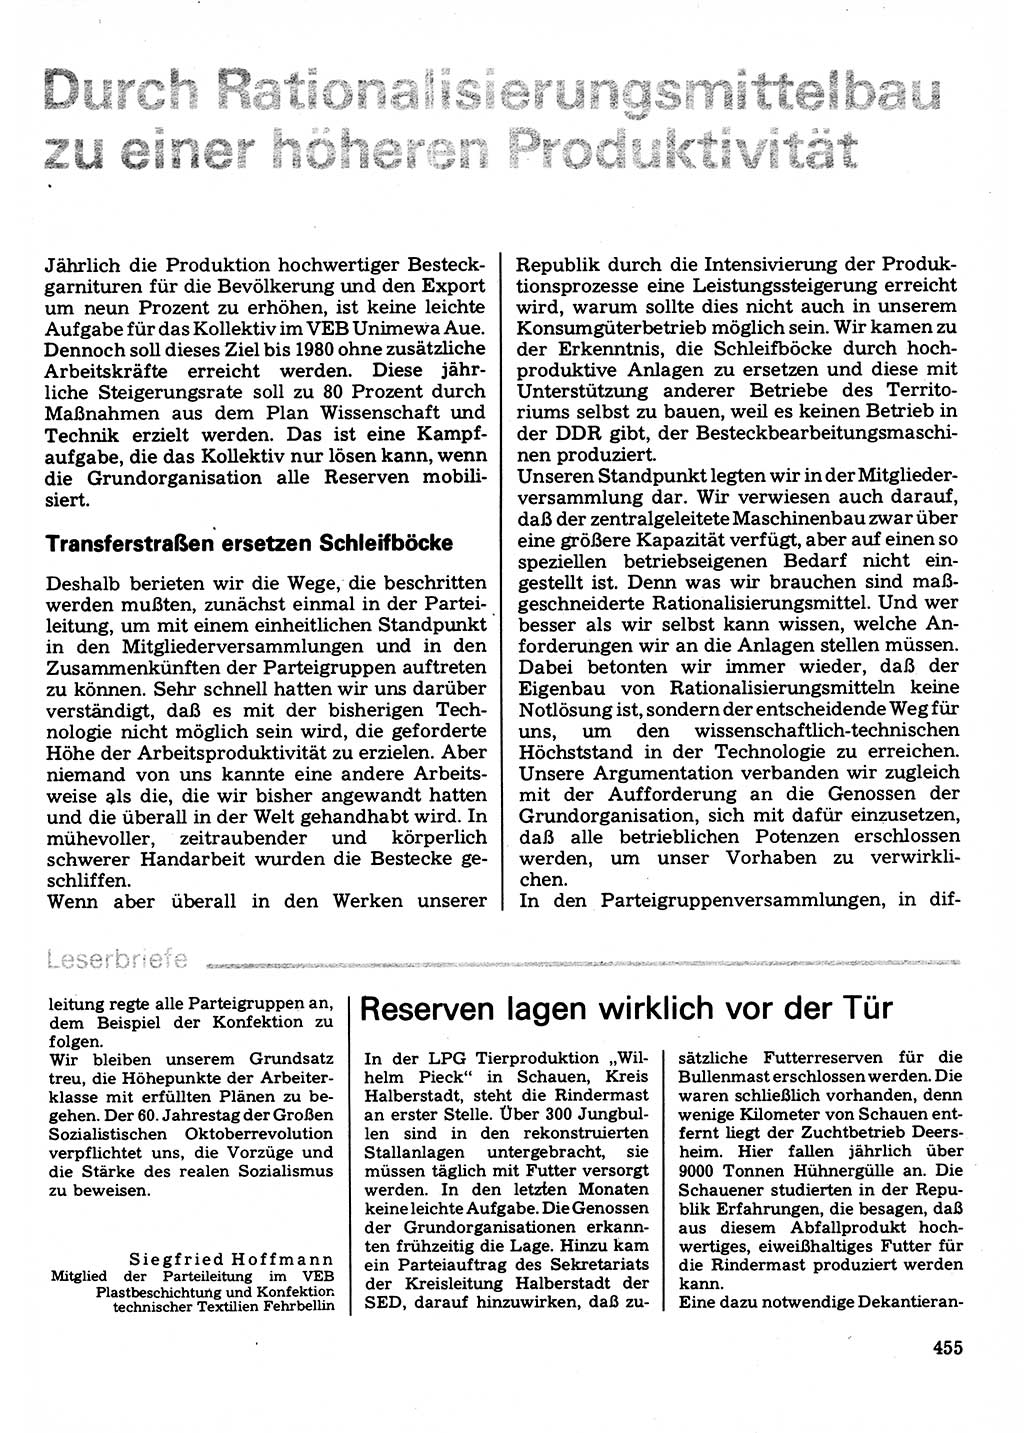 Neuer Weg (NW), Organ des Zentralkomitees (ZK) der SED (Sozialistische Einheitspartei Deutschlands) für Fragen des Parteilebens, 32. Jahrgang [Deutsche Demokratische Republik (DDR)] 1977, Seite 455 (NW ZK SED DDR 1977, S. 455)